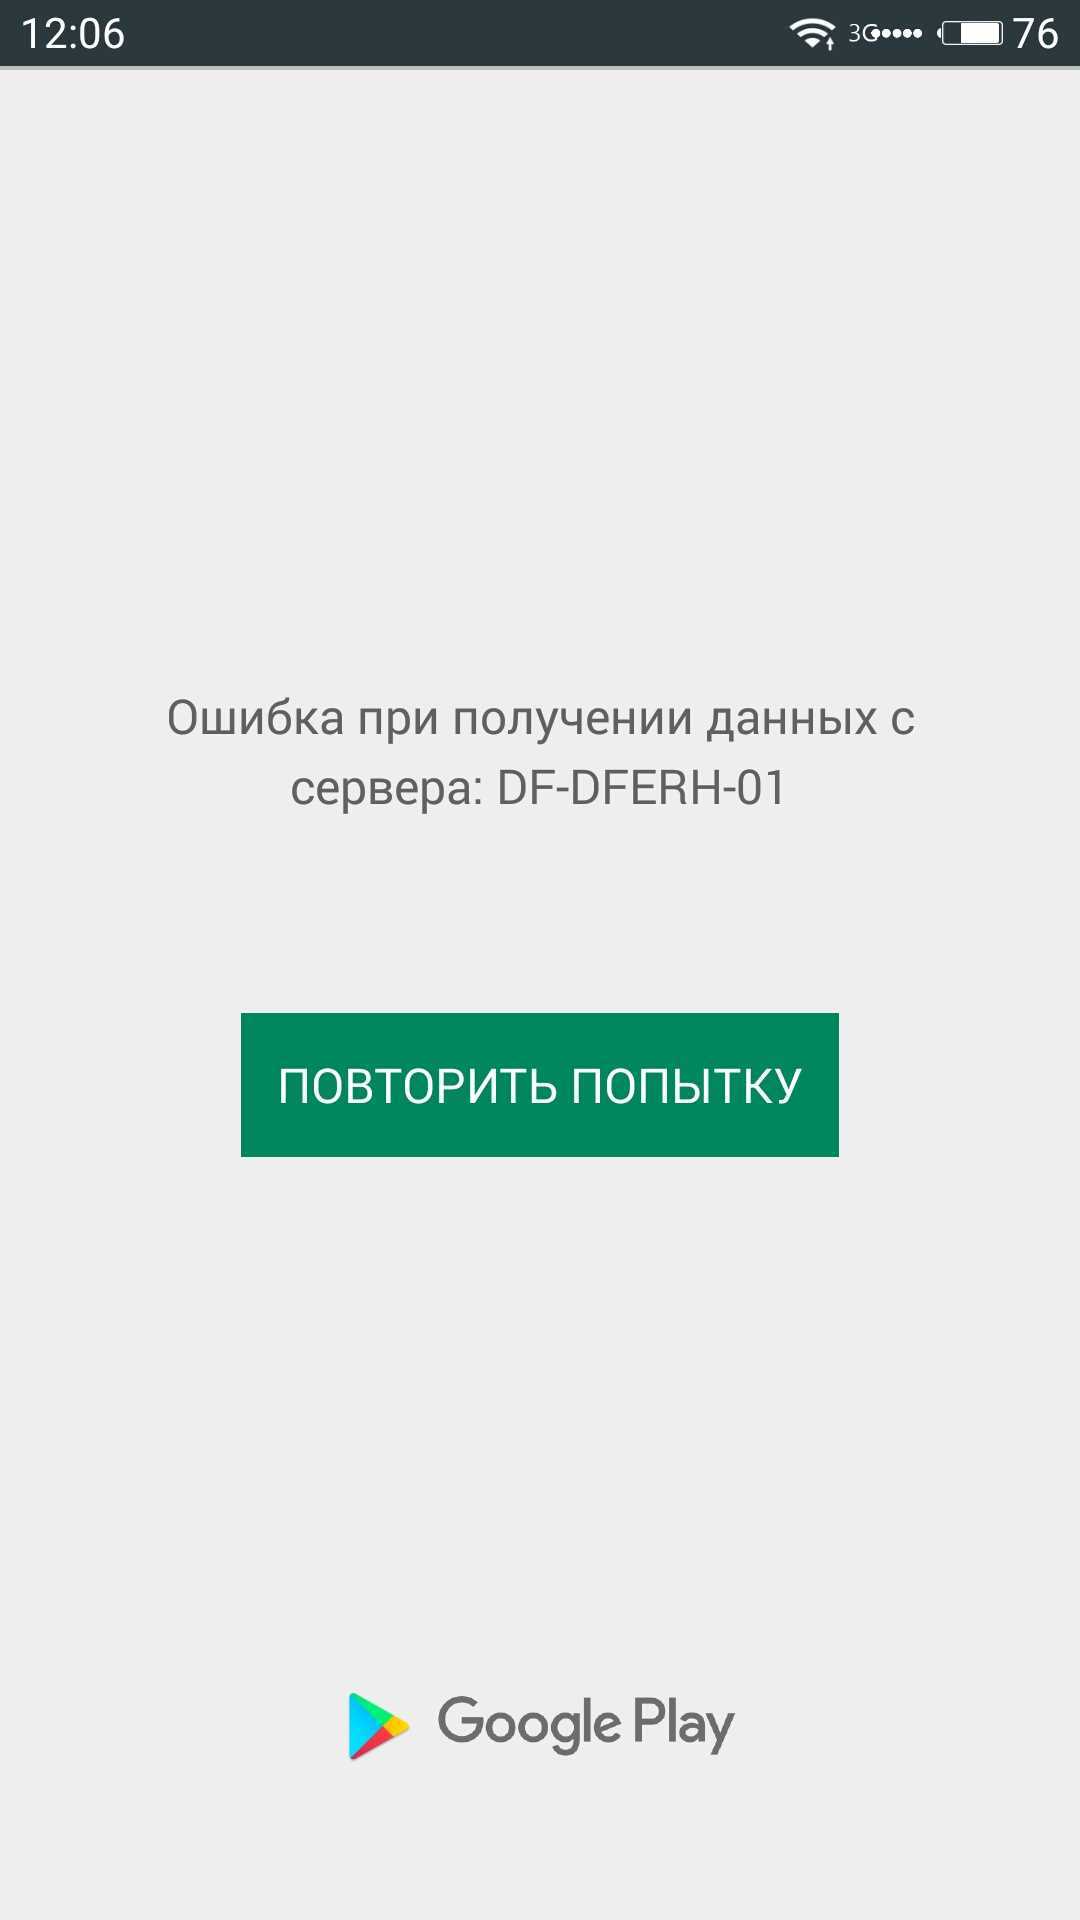 Ошибка с кодом DF-DFERH-01 в Google Play Маркете может возникнуть по ряду причин, большинство из которых имею программный характер и может быть легко устранено